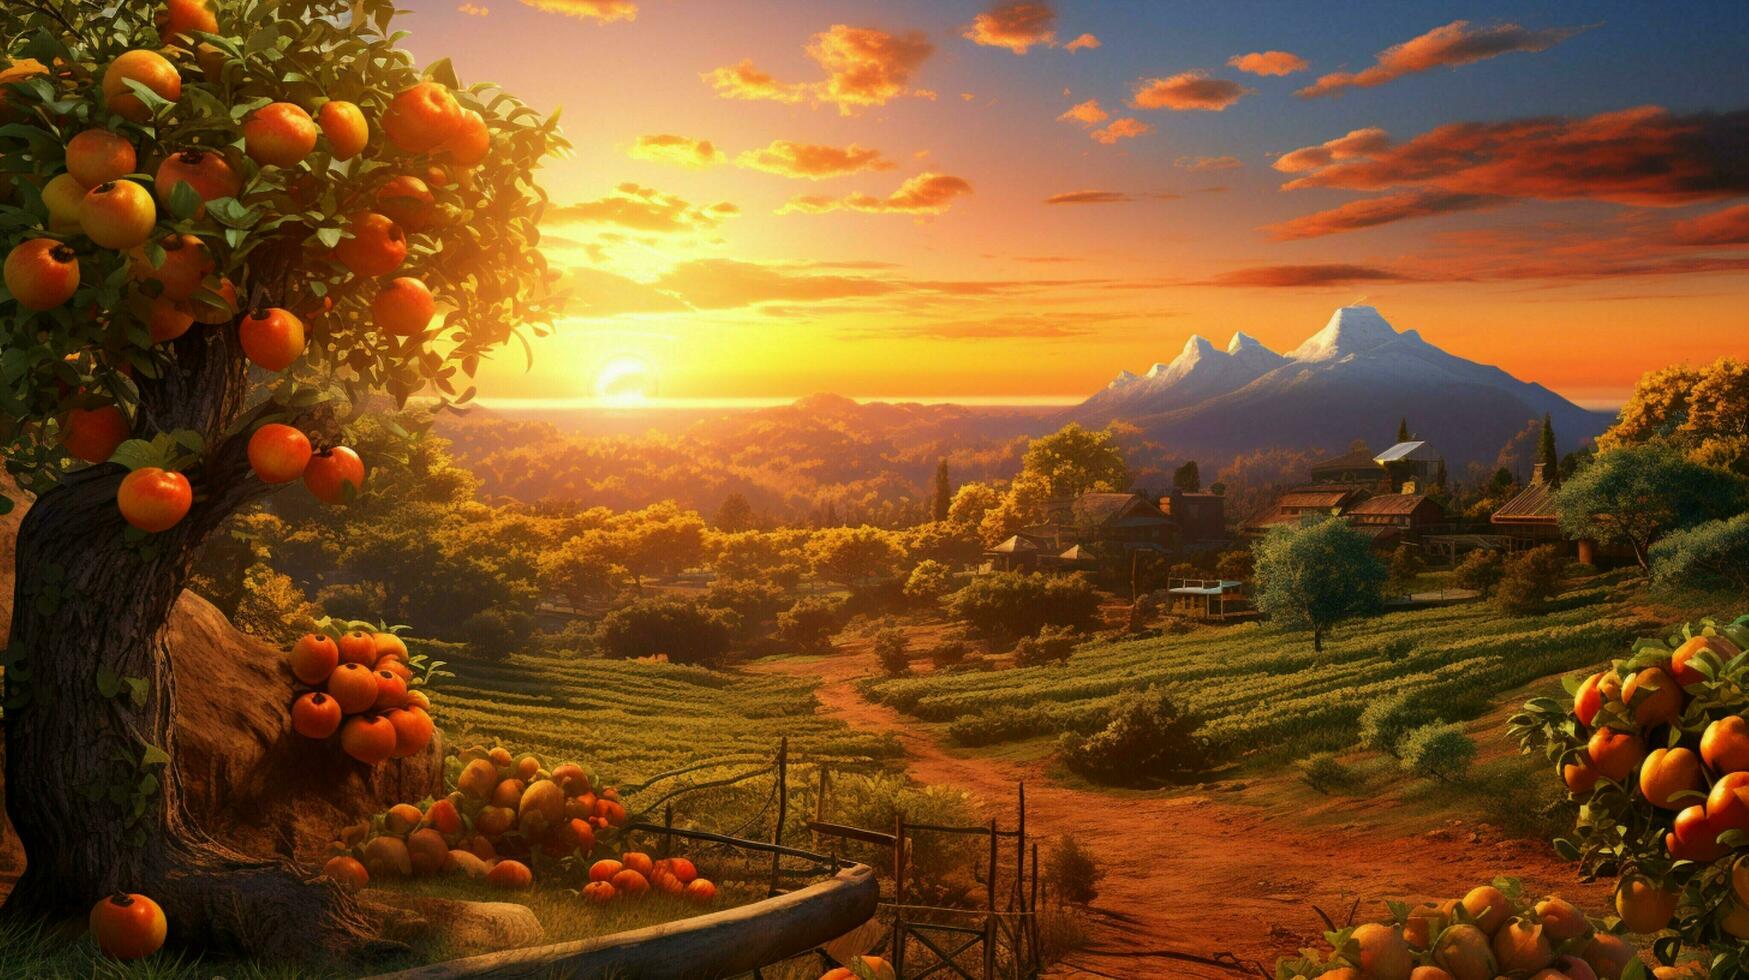 ripe fruit on idyllic farm in vibrant sunset photo